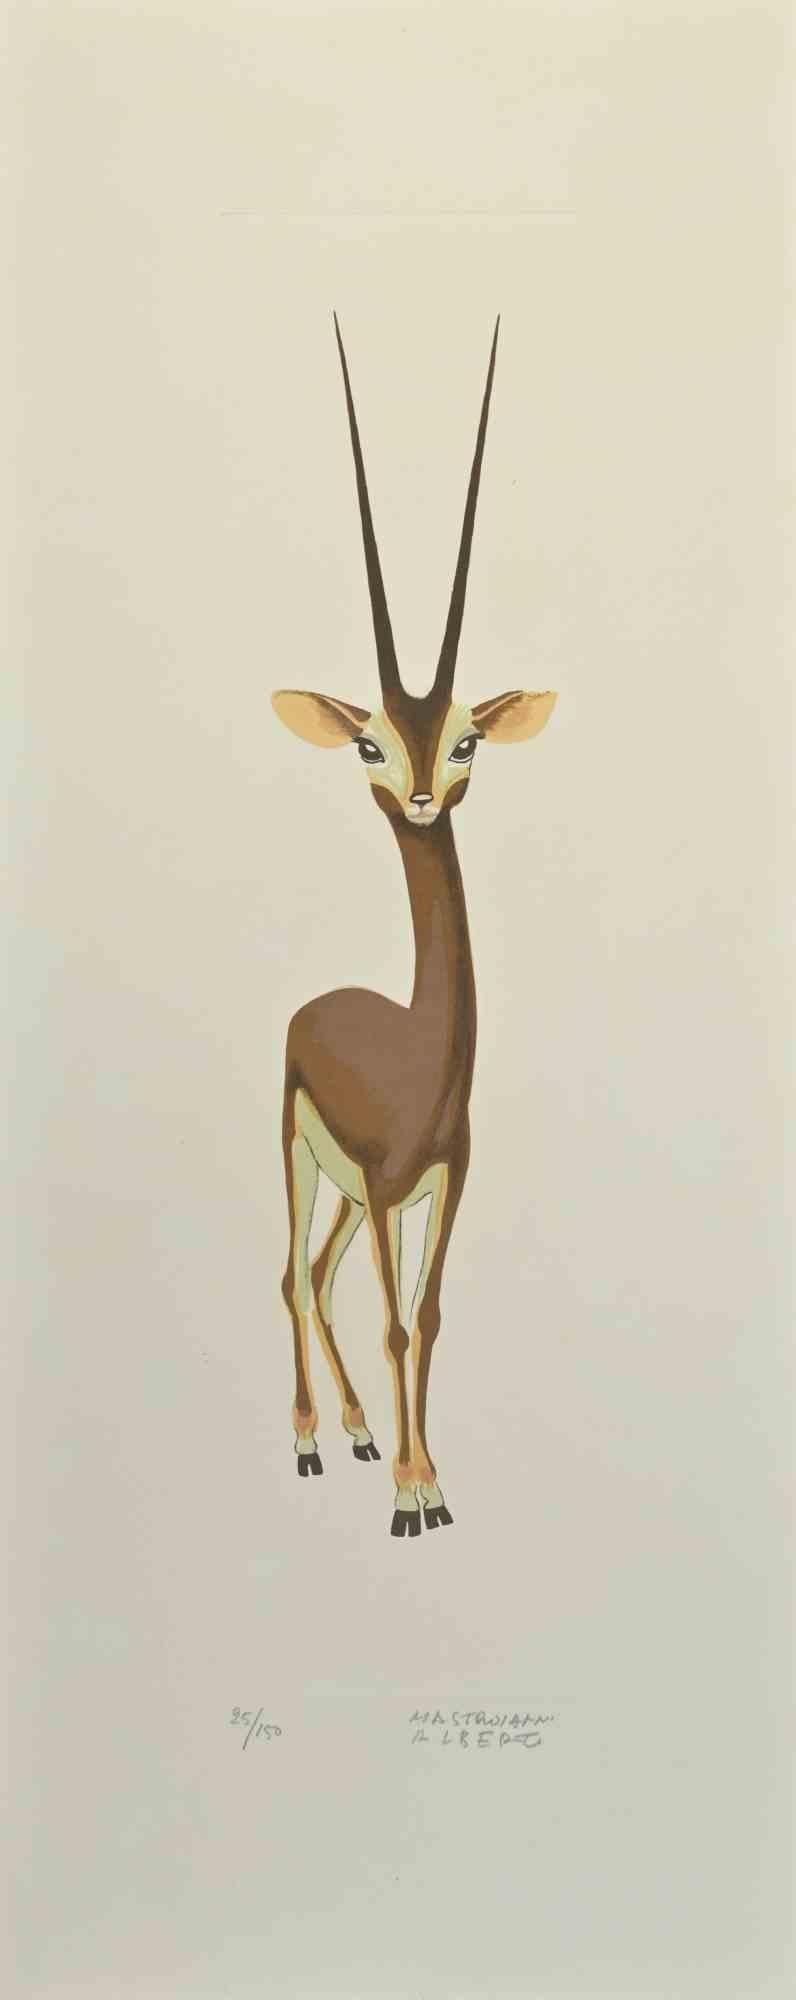 Gazelle est une lithographie réalisée par Alberto Mastroianni dans les années 1970.

Signé à la main dans la marge inférieure droite. Numéroté au crayon dans la marge inférieure. Édition de 150 exemplaires.

Les efforts de l'artiste indiquent